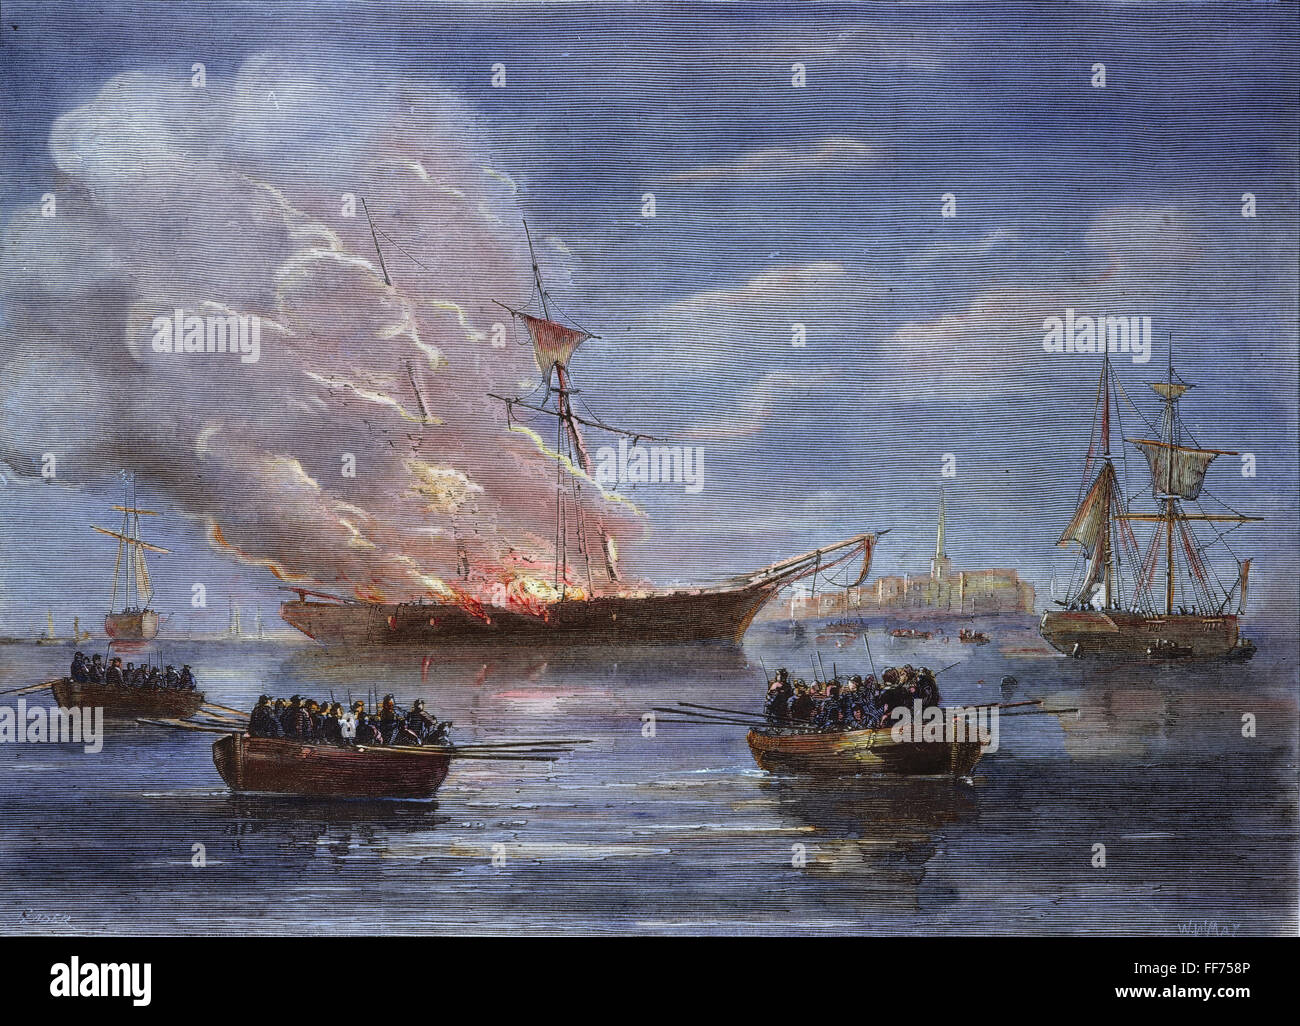 Gravure de GASPEE, 1772. /Nl'brûler, par une partie des hommes de la Providence, du navire britannique Gaspee est échoué dans la baie de Narragansett, 9 juin 1772 : gravure couleur, 19e siècle. Banque D'Images